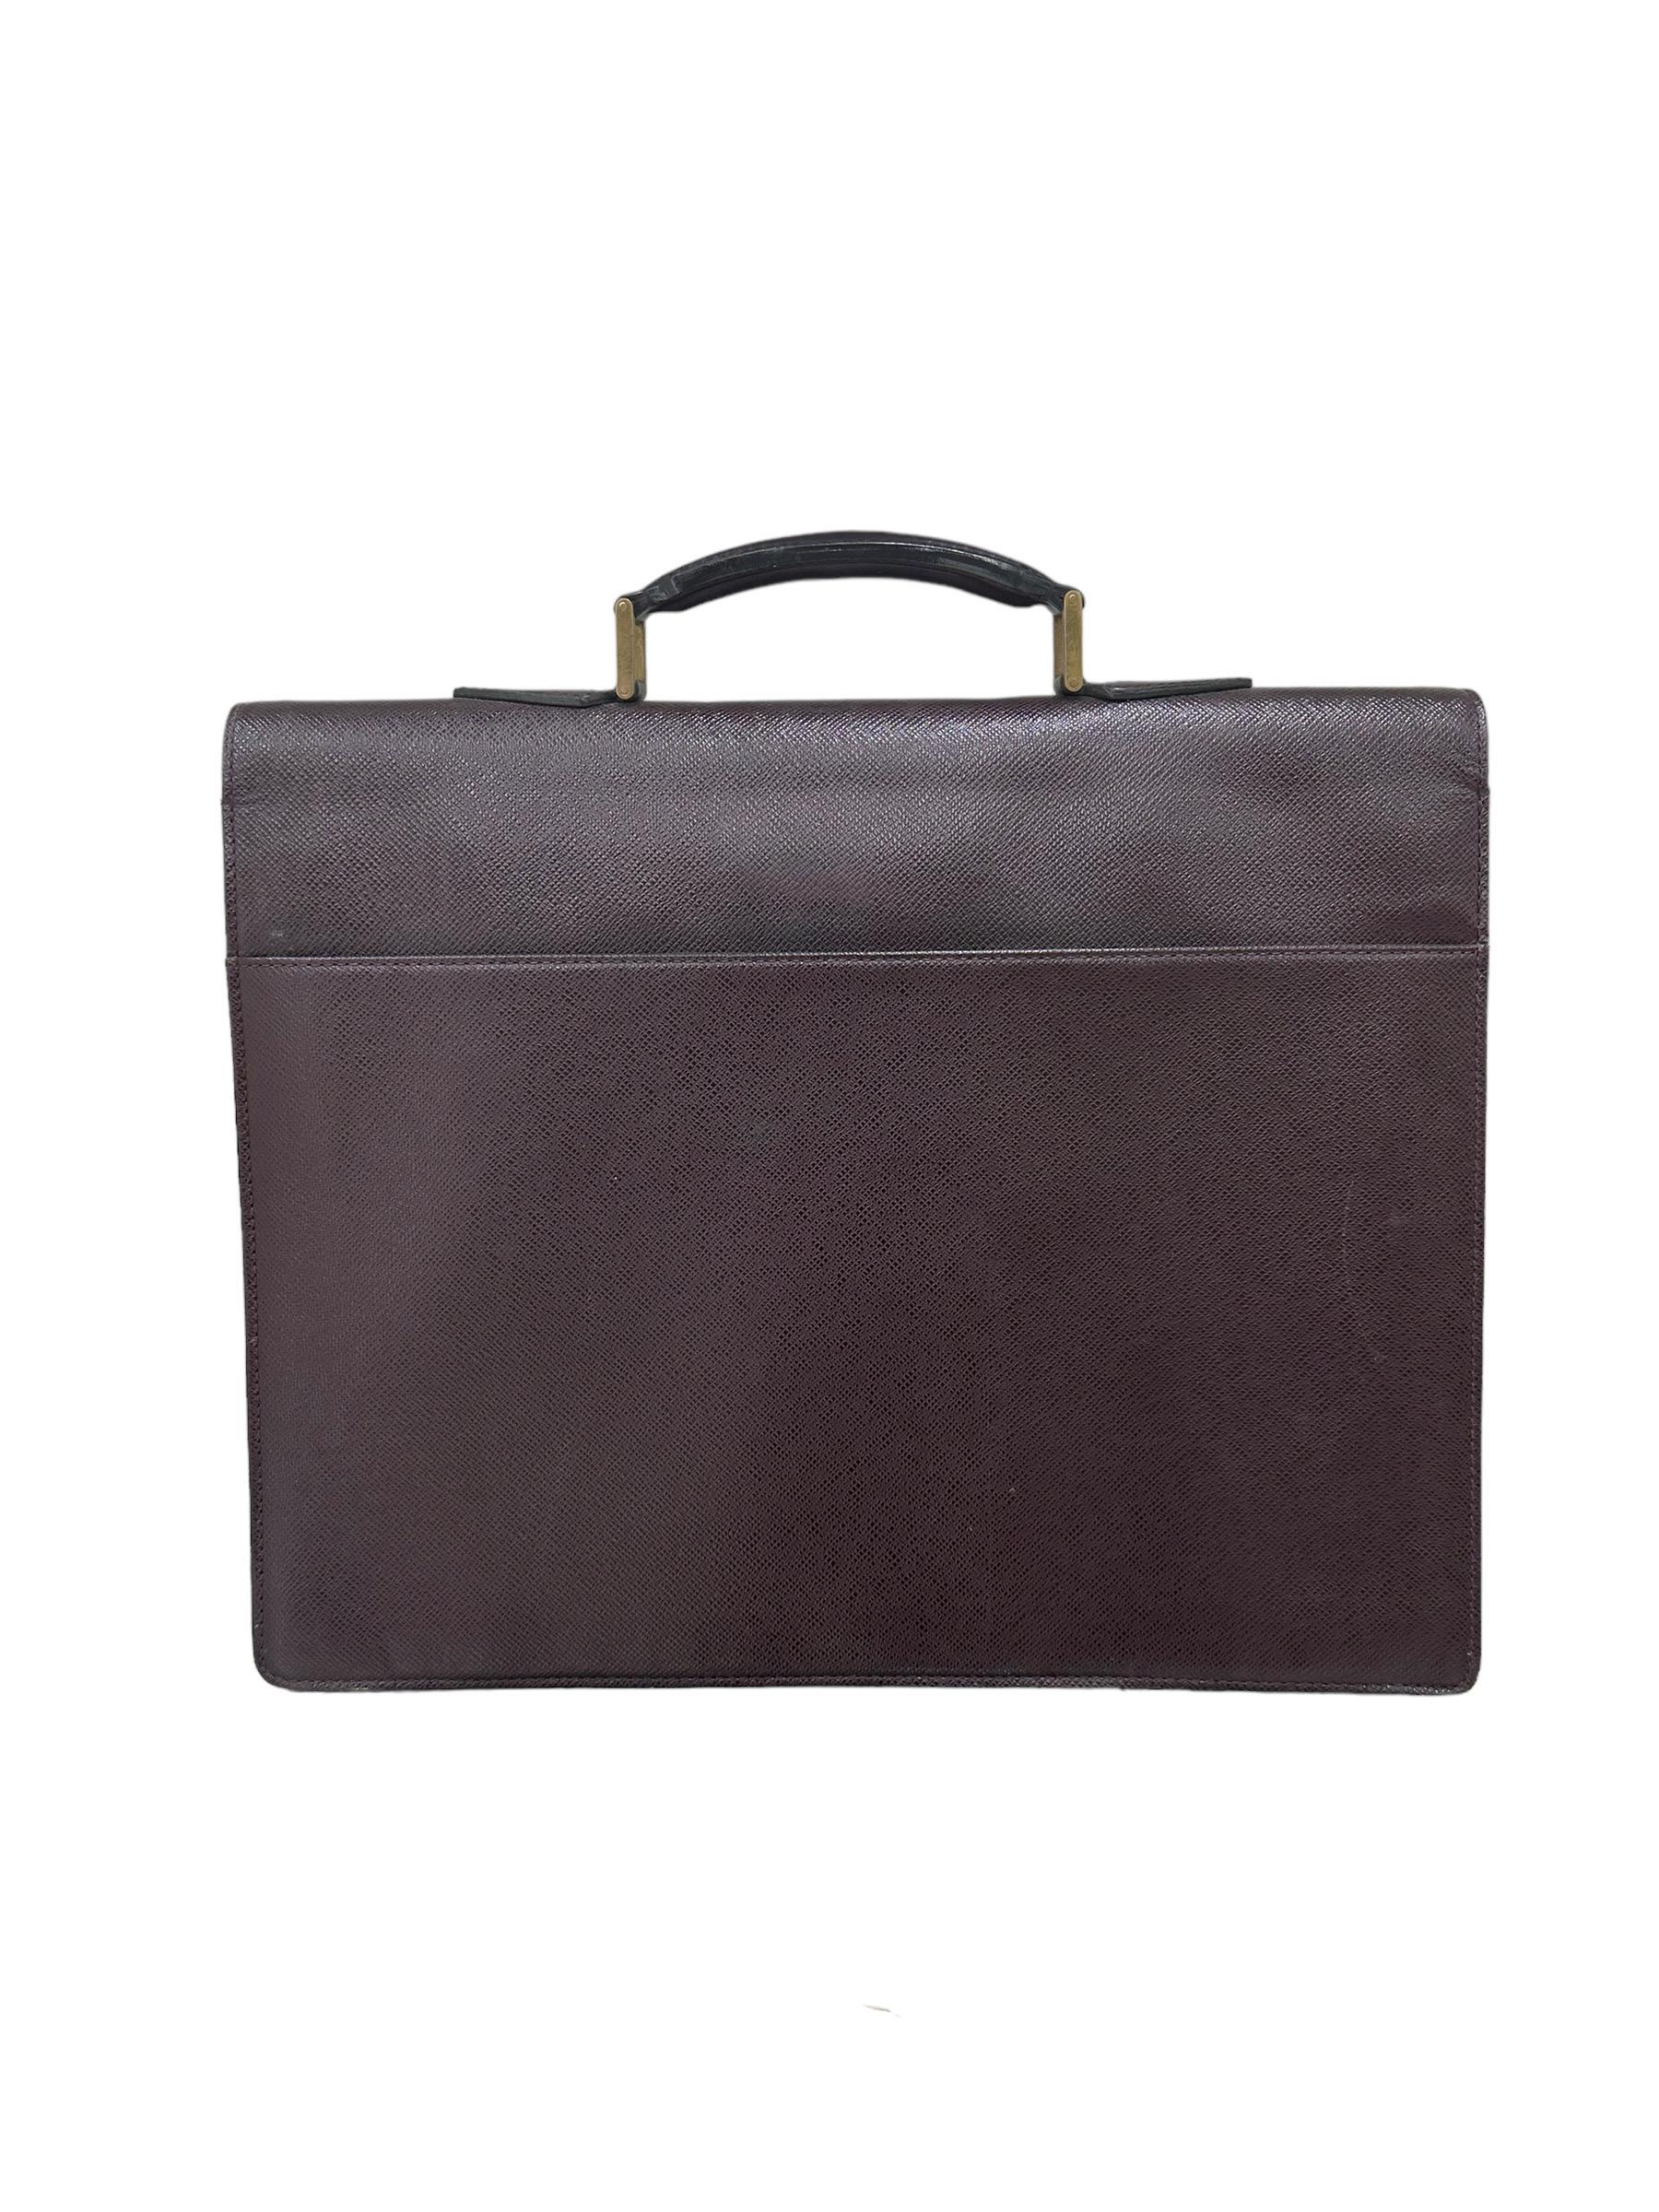 Women's or Men's Louis Vuitton Serviette Kourad Purple Leather Suitcase